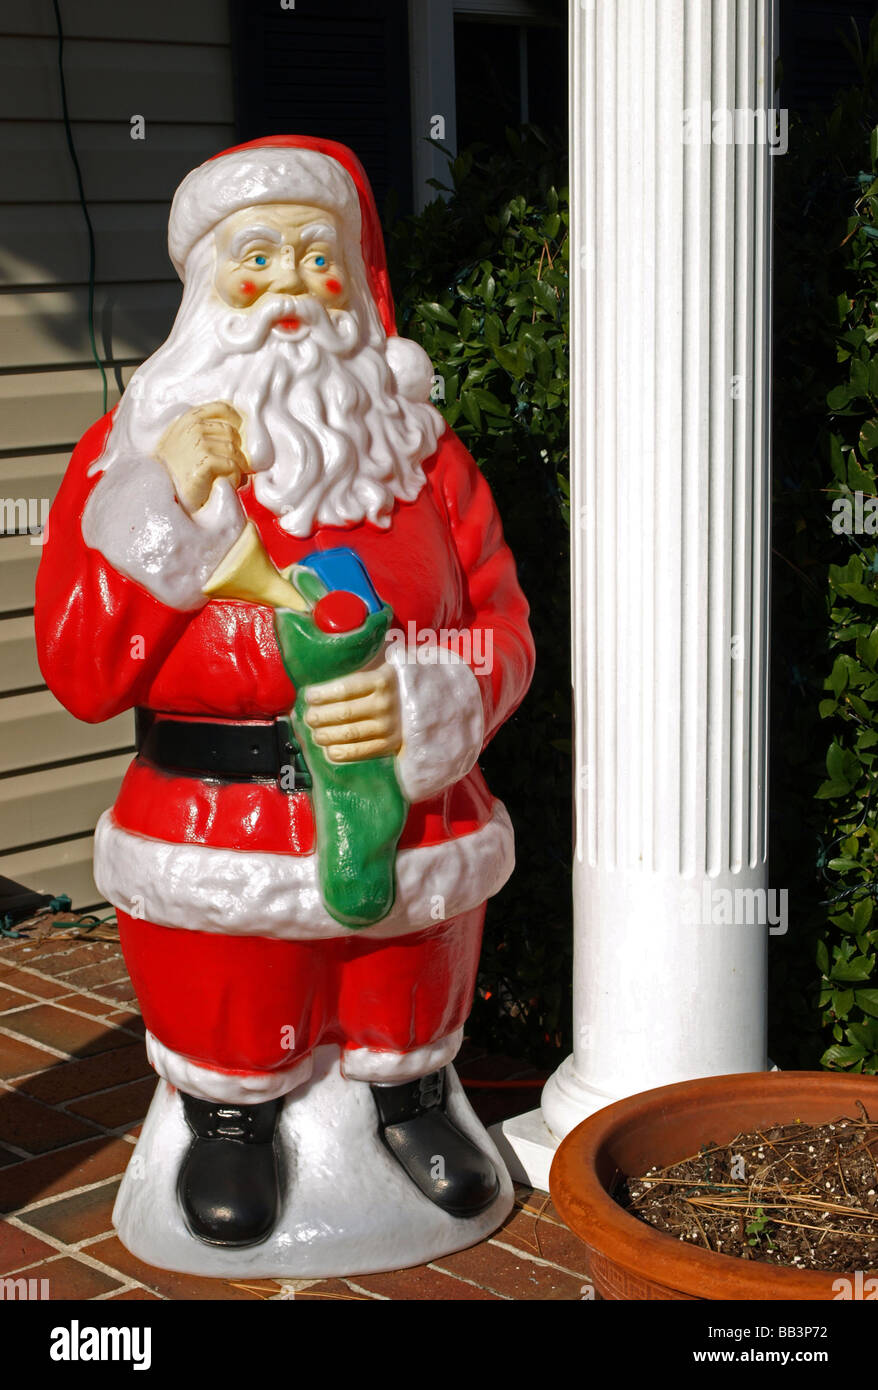 Santa Claus Nikolaus Nikolaus Lifesize Kunststoff Statue Ornament mit helle rote Kleidung, Hut und weißen Bart in schwarzen Stiefeln Stockfoto